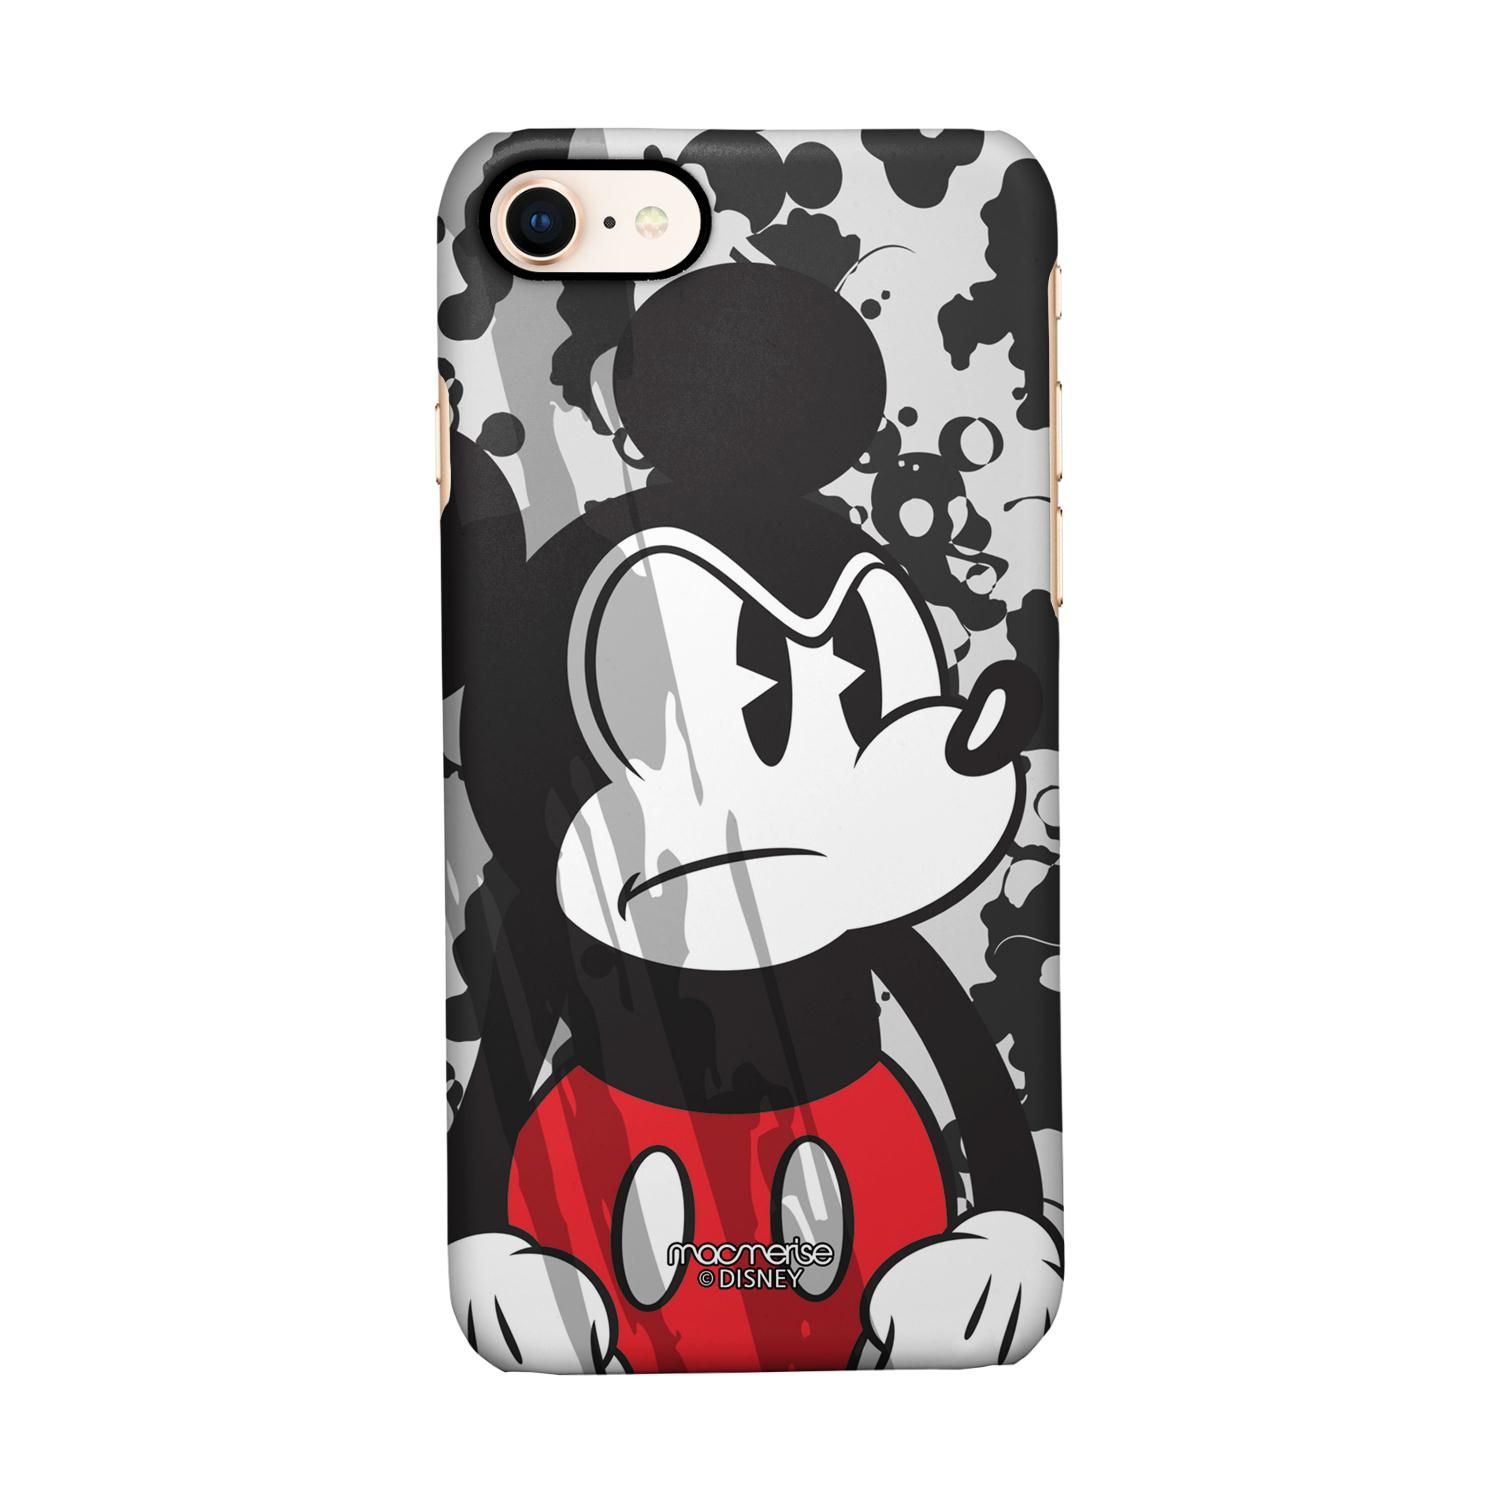 Buy Grumpy Mickey - Sleek Phone Case for iPhone 7 Online